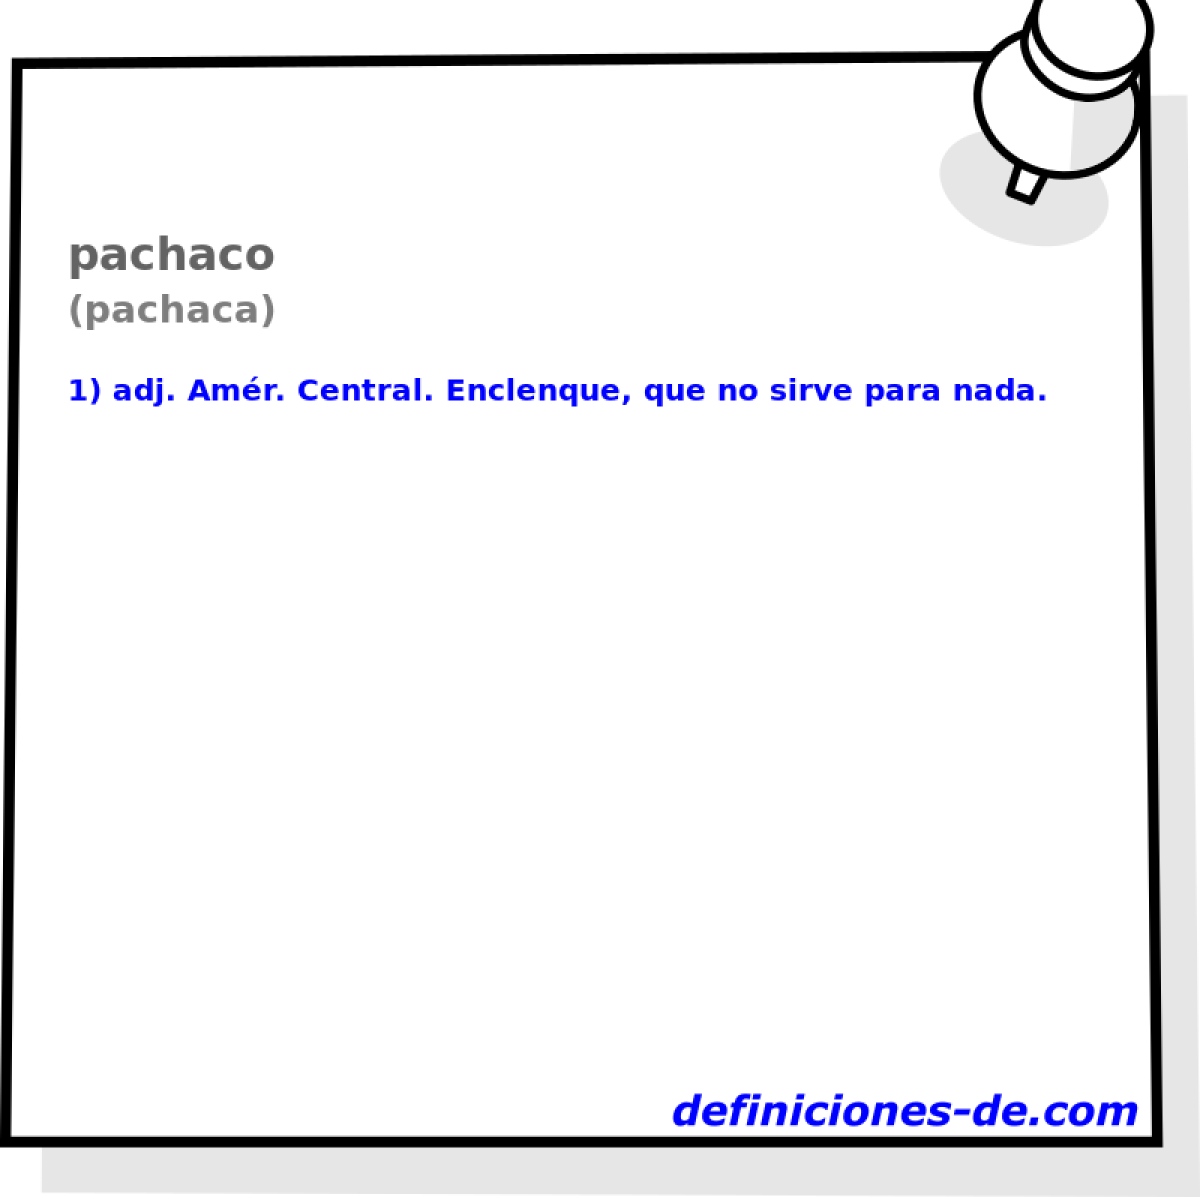 pachaco (pachaca)